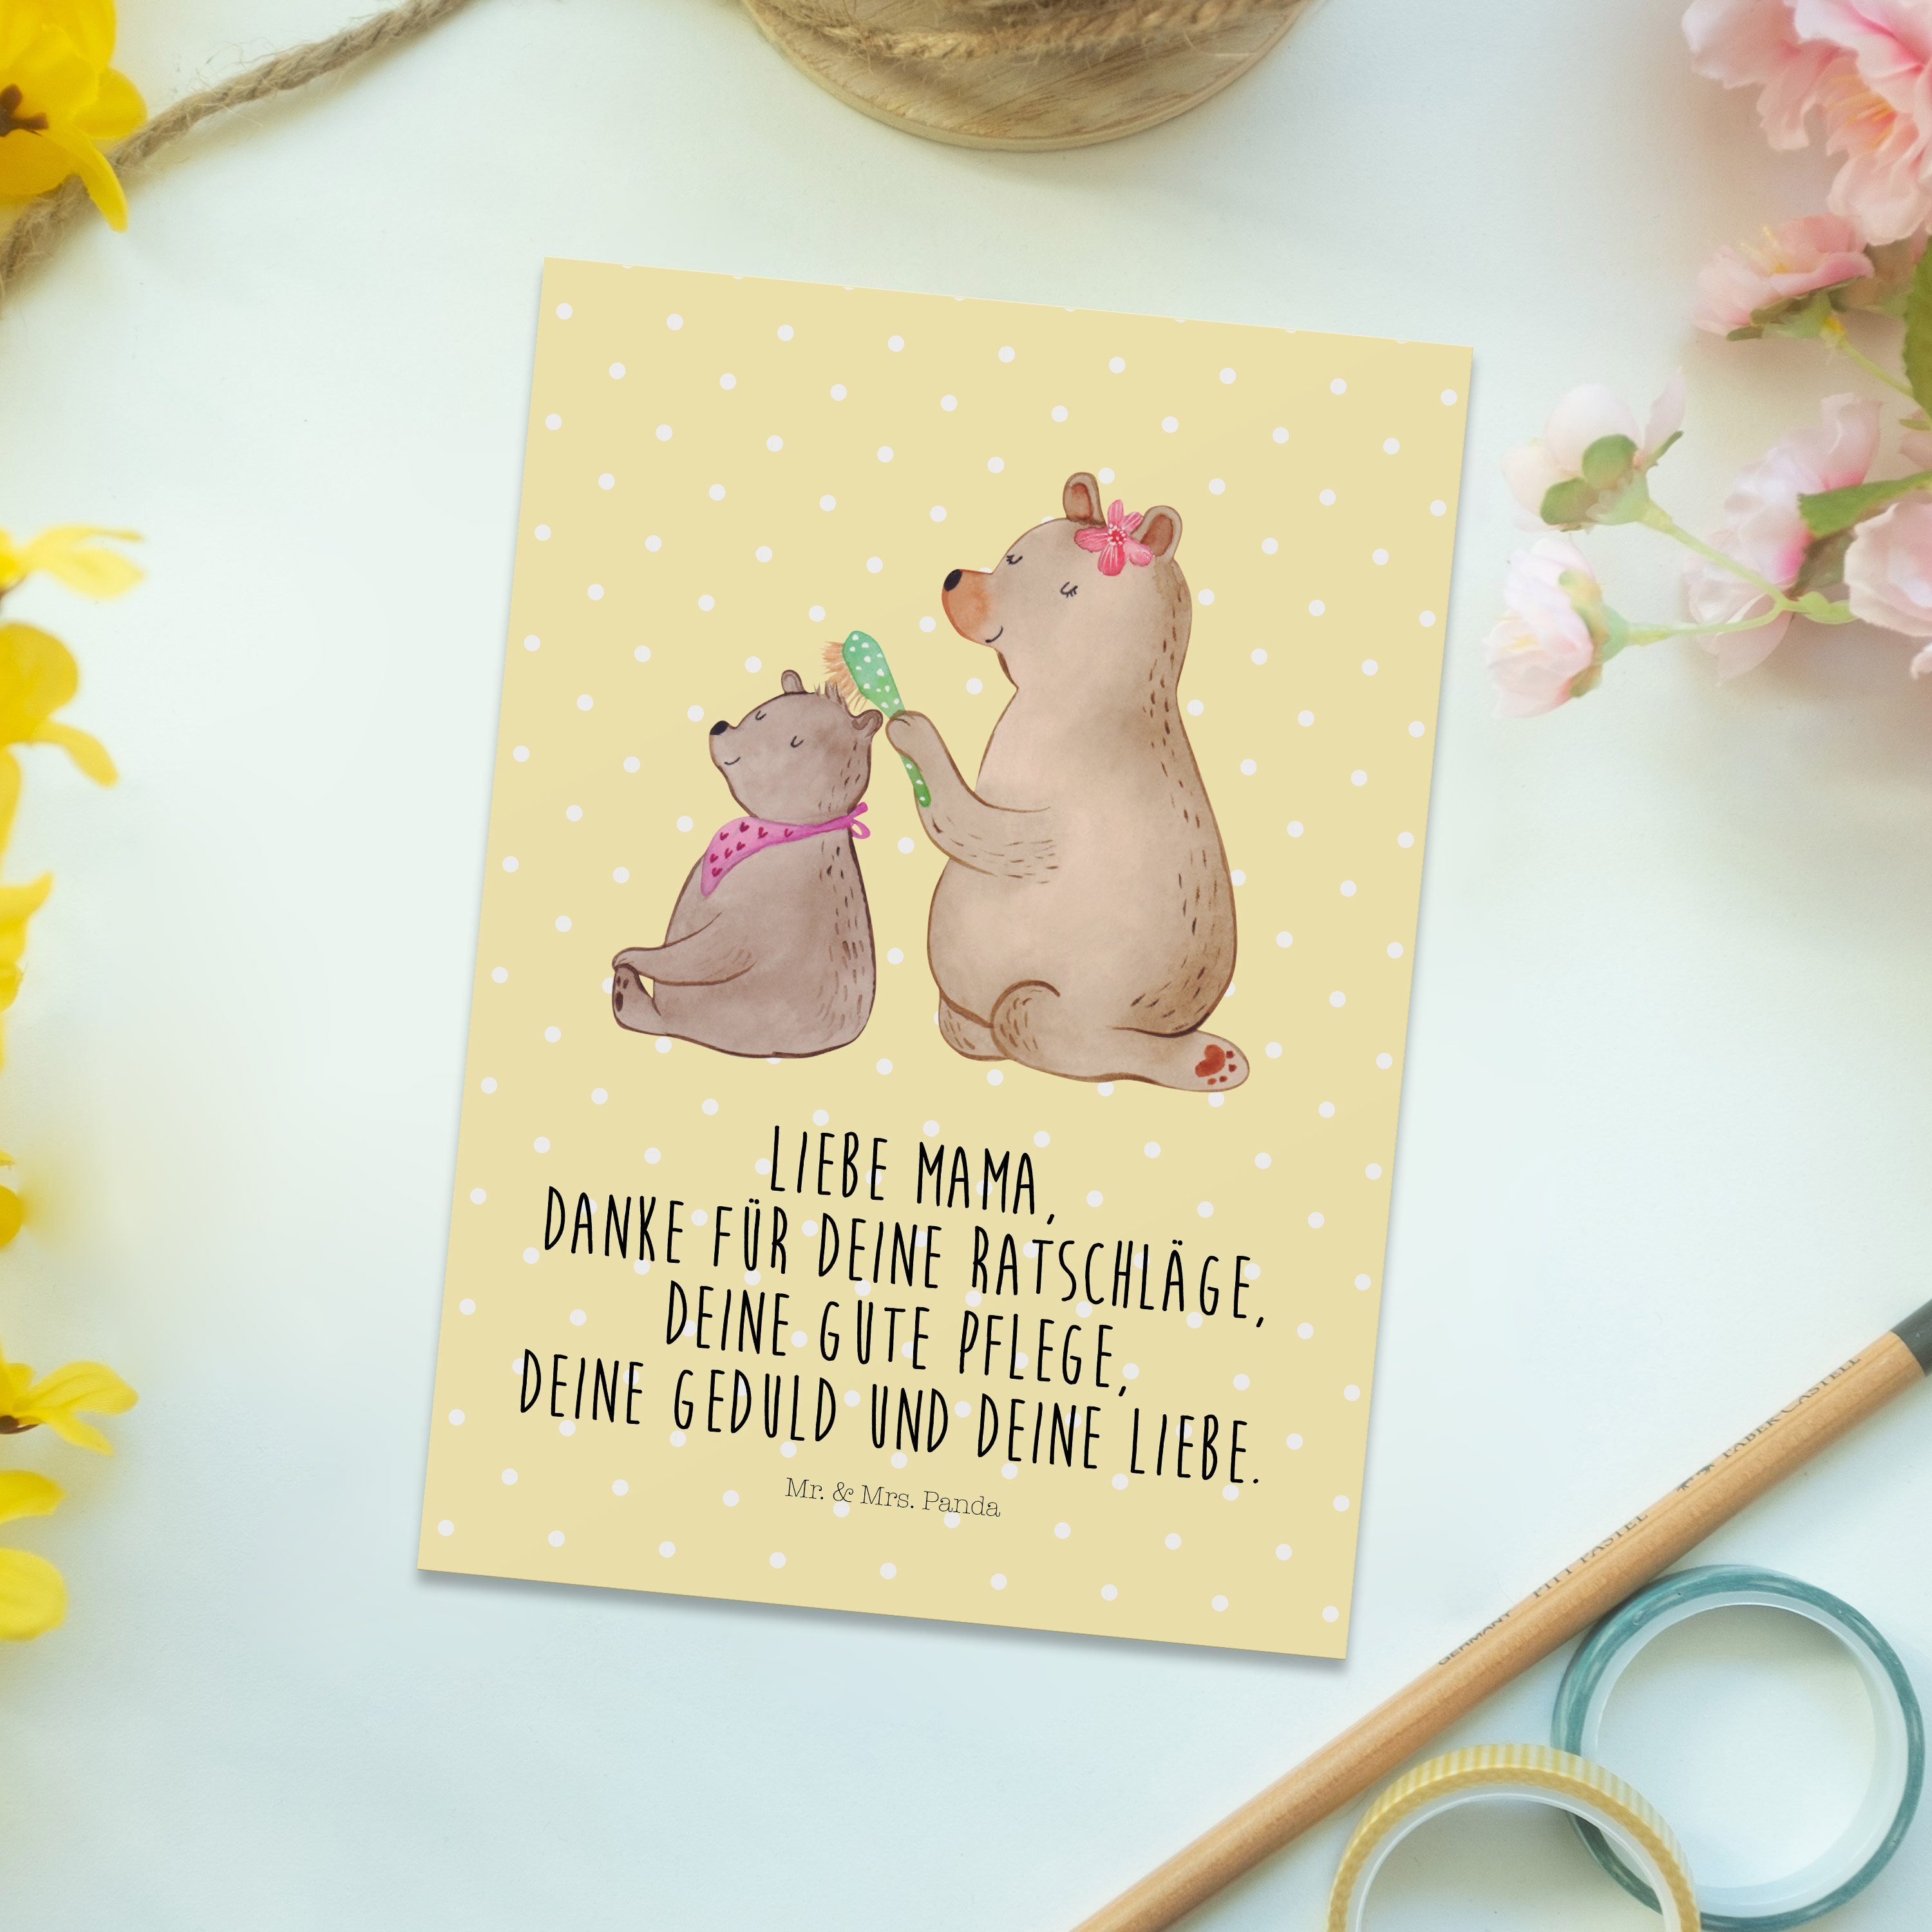 Mr. & Mrs. Geschenk, mit Muttertag, - Einladun Gelb Pastell Vatertag, - Kind Postkarte Panda Bär